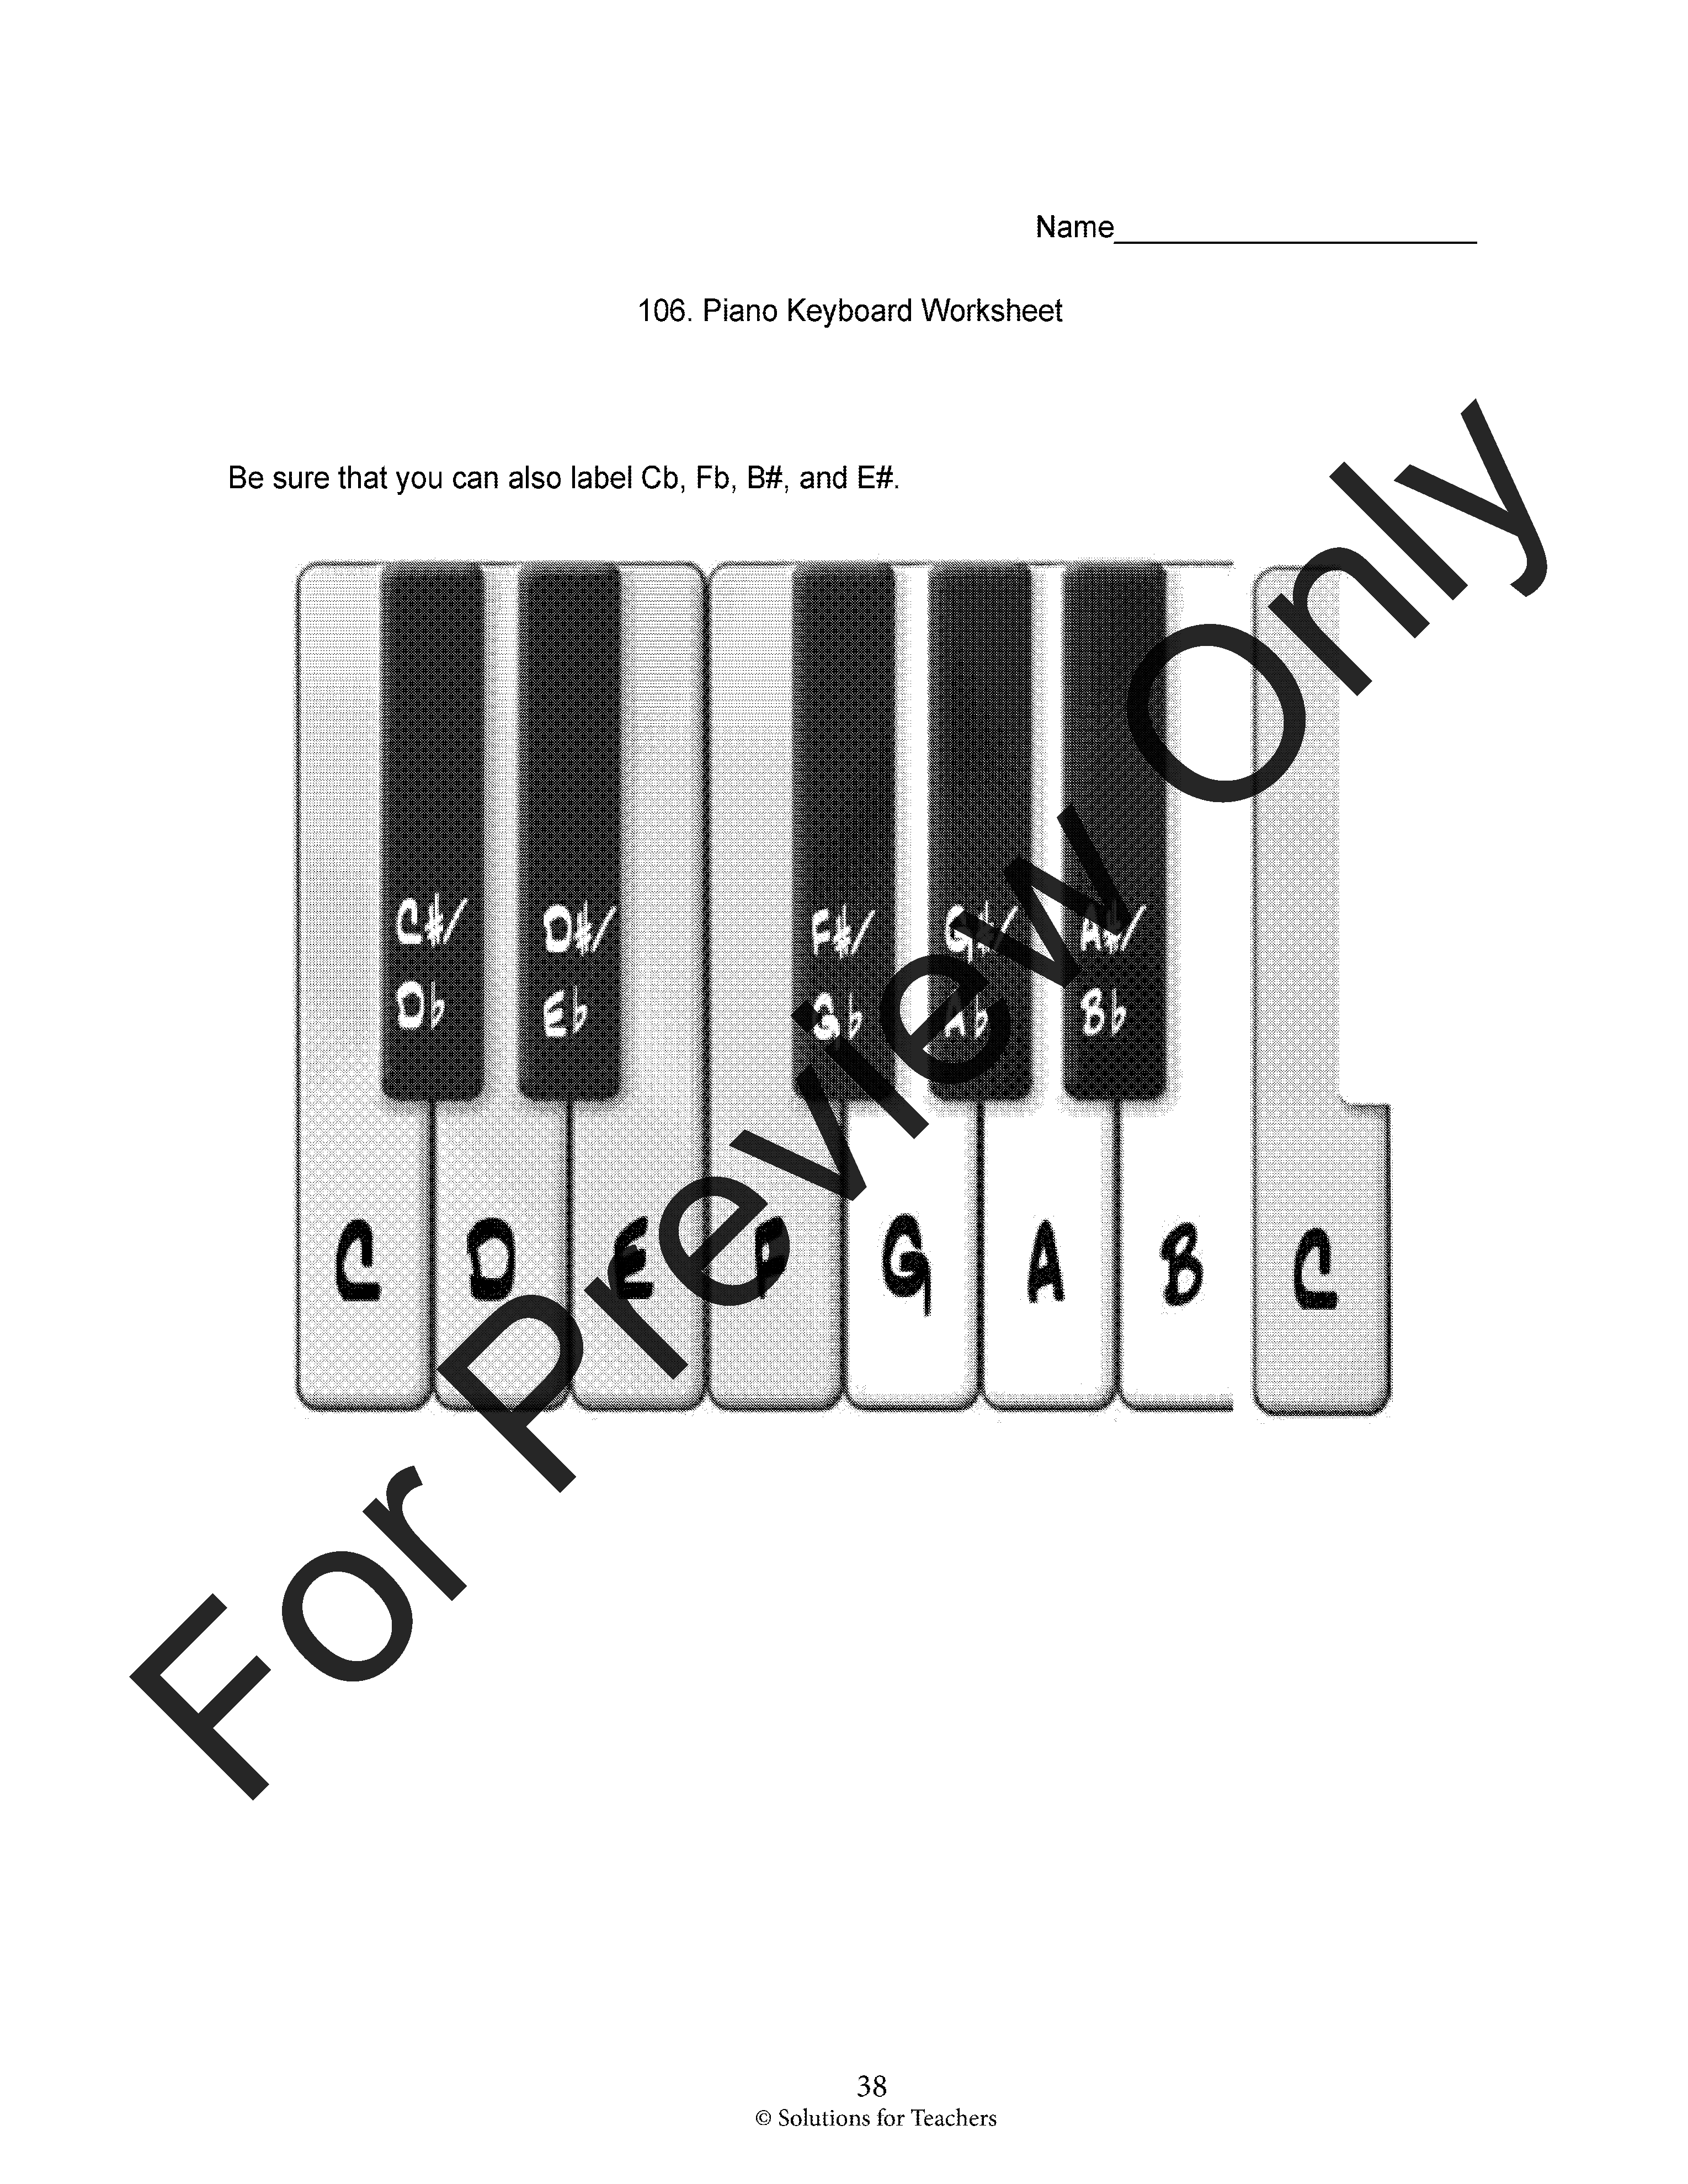 AIM For Success #2 Bass Clarinet Book P.O.D.